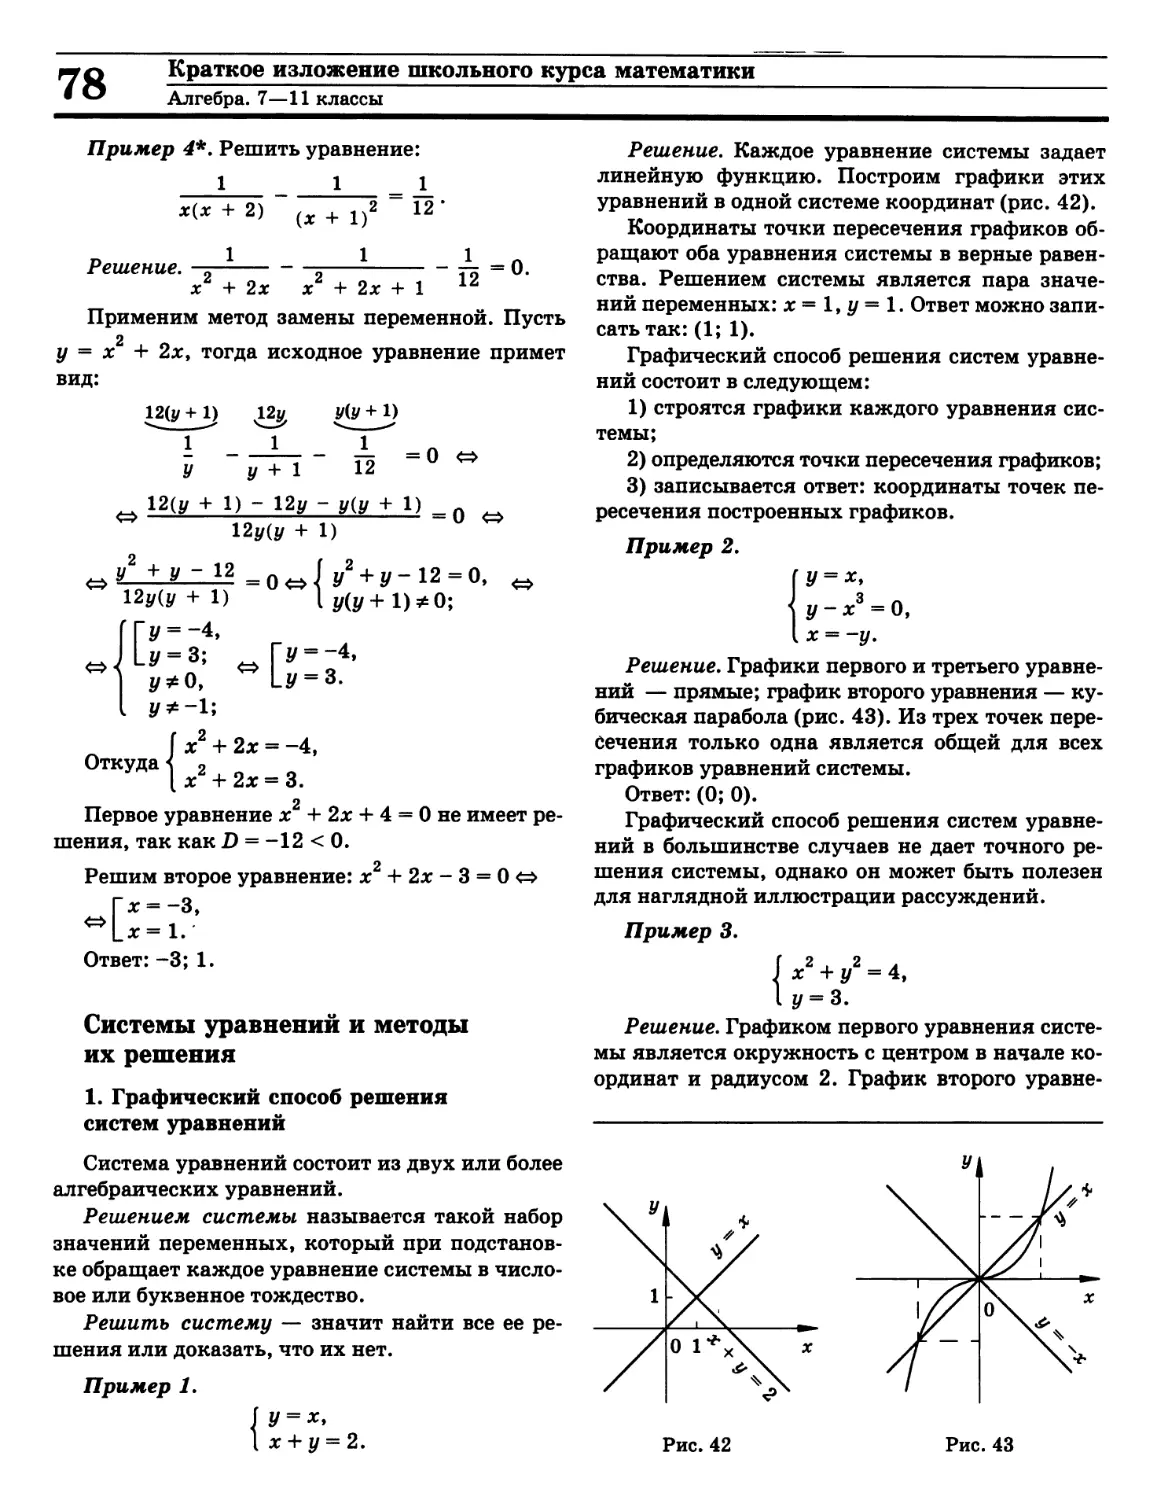 Графический способ решения систем уравнений
Системы линейных уравнений